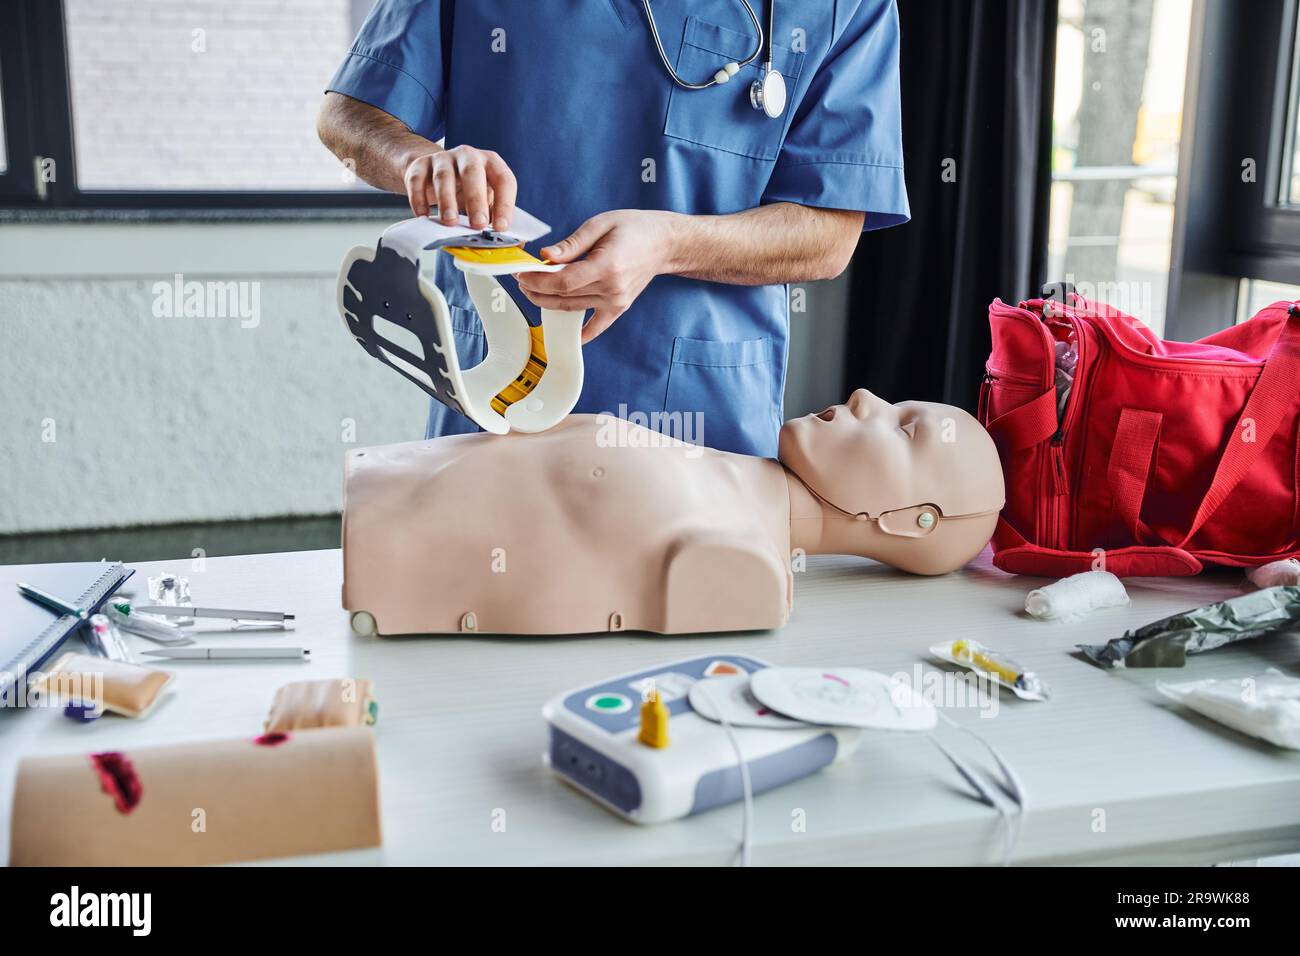 Vue partielle du personnel de santé en uniforme bleu tenant le cou au-dessus du mannequin de RCP, du kit de premiers soins, du défibrillateur et des appareils médicaux en formation r Banque D'Images